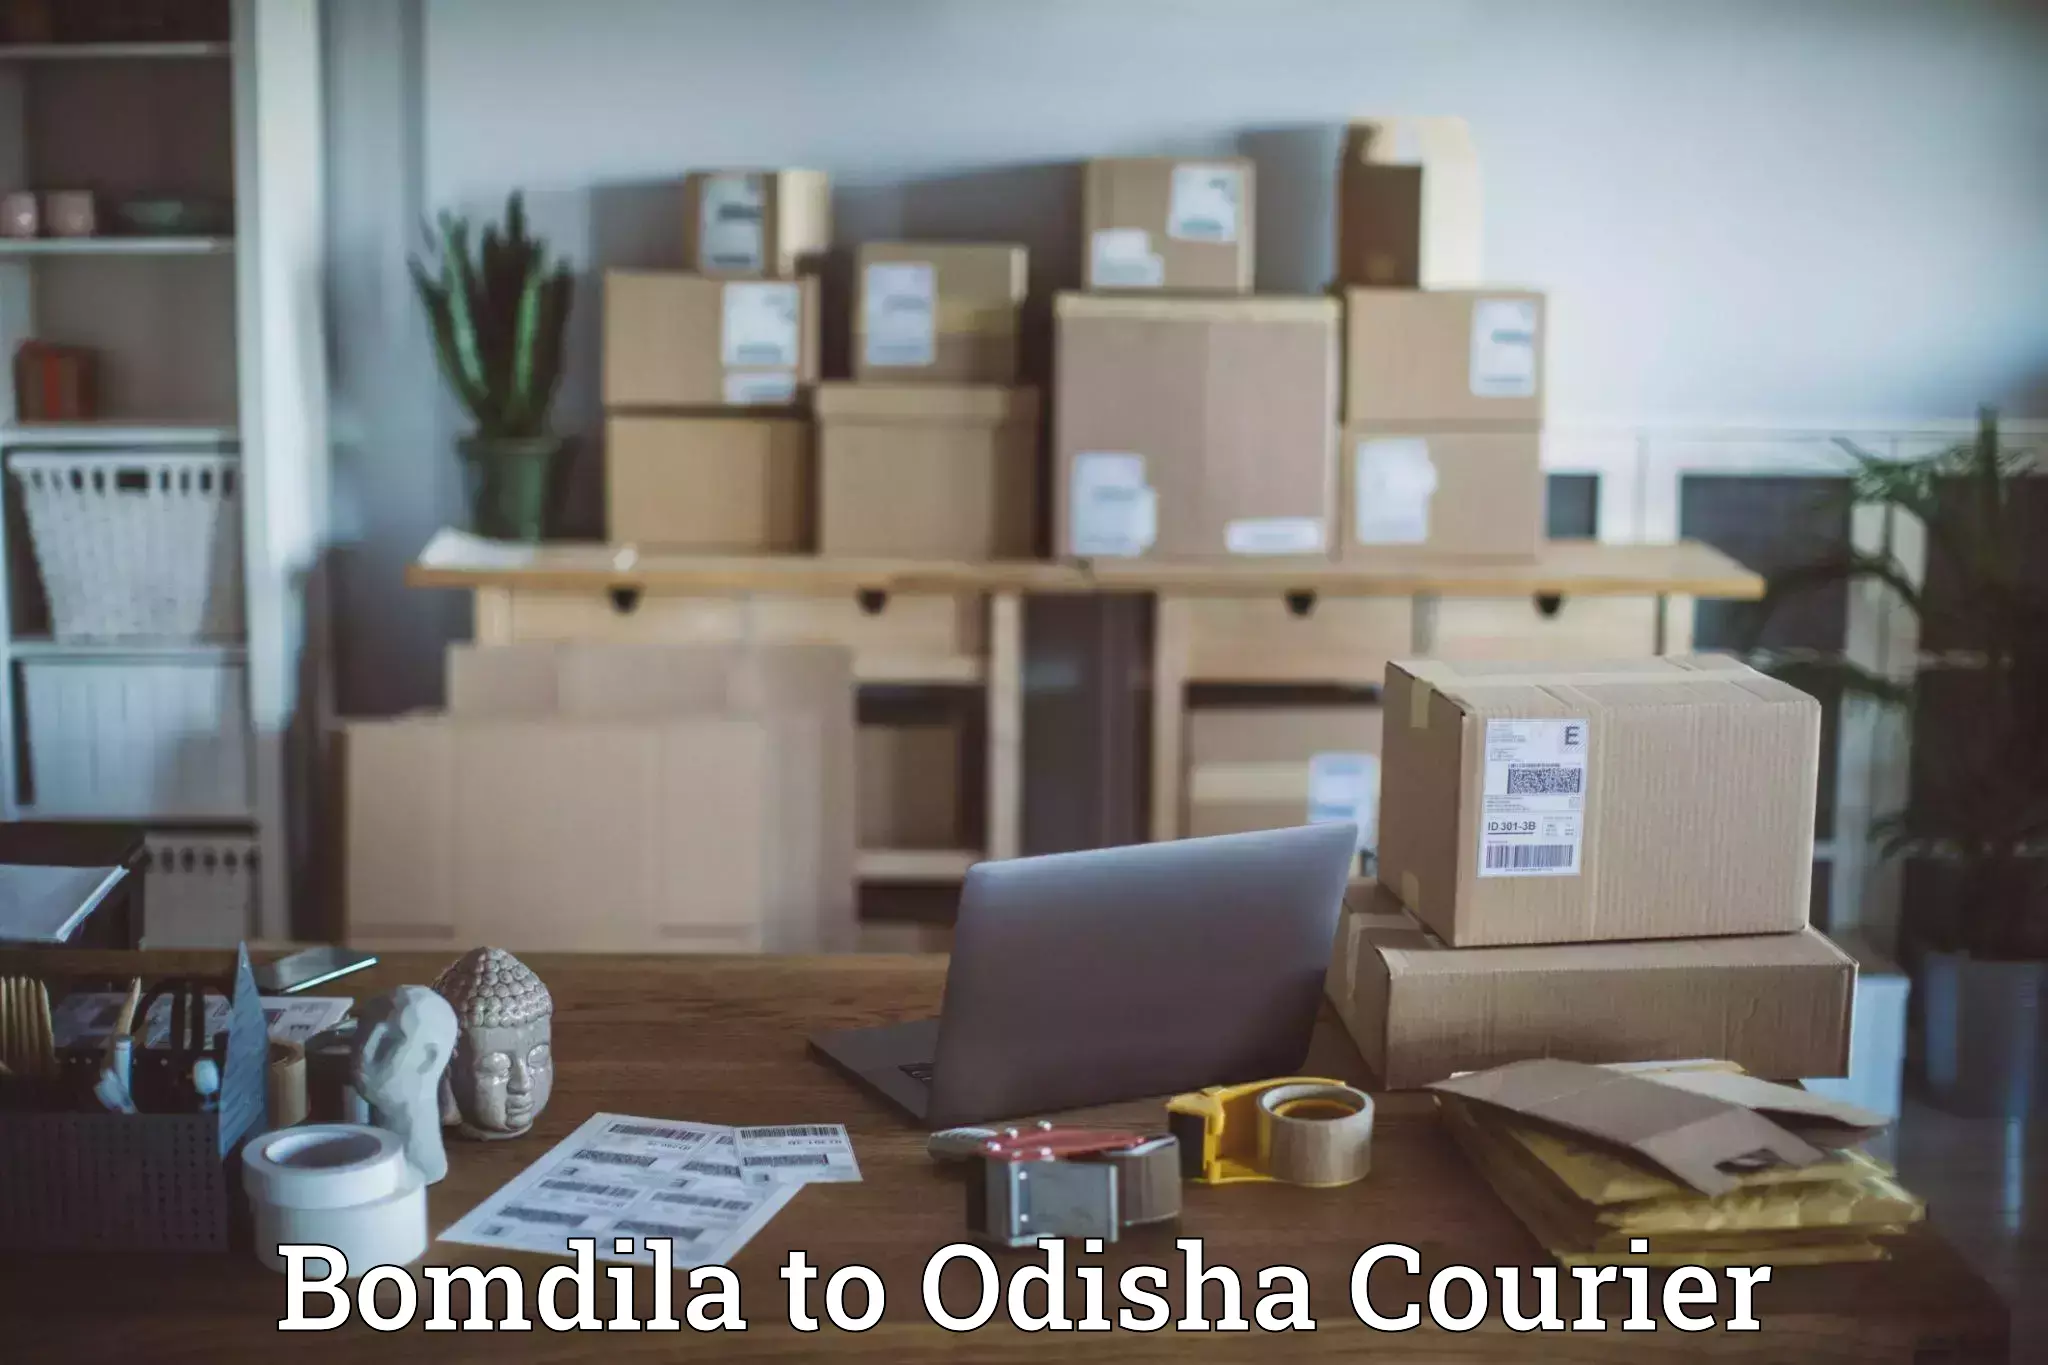 High-capacity parcel service Bomdila to Tikiri